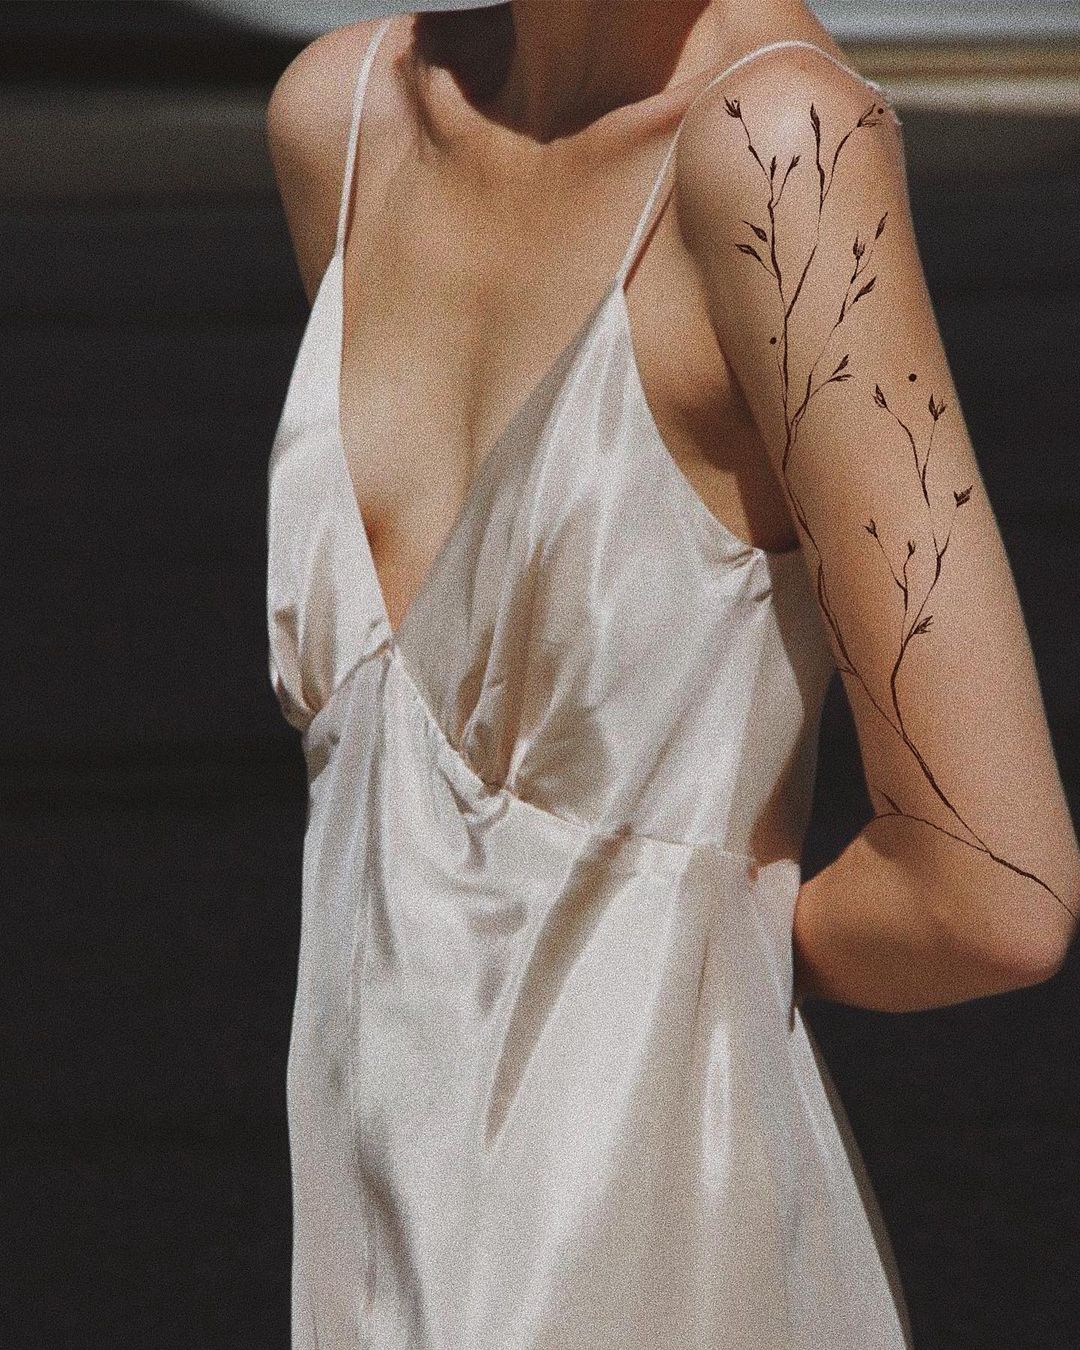 Рукописный текст: что особенного в хендпоук-тату — жанре, который любят Рианна и Анджелина Джоли (фото 3)